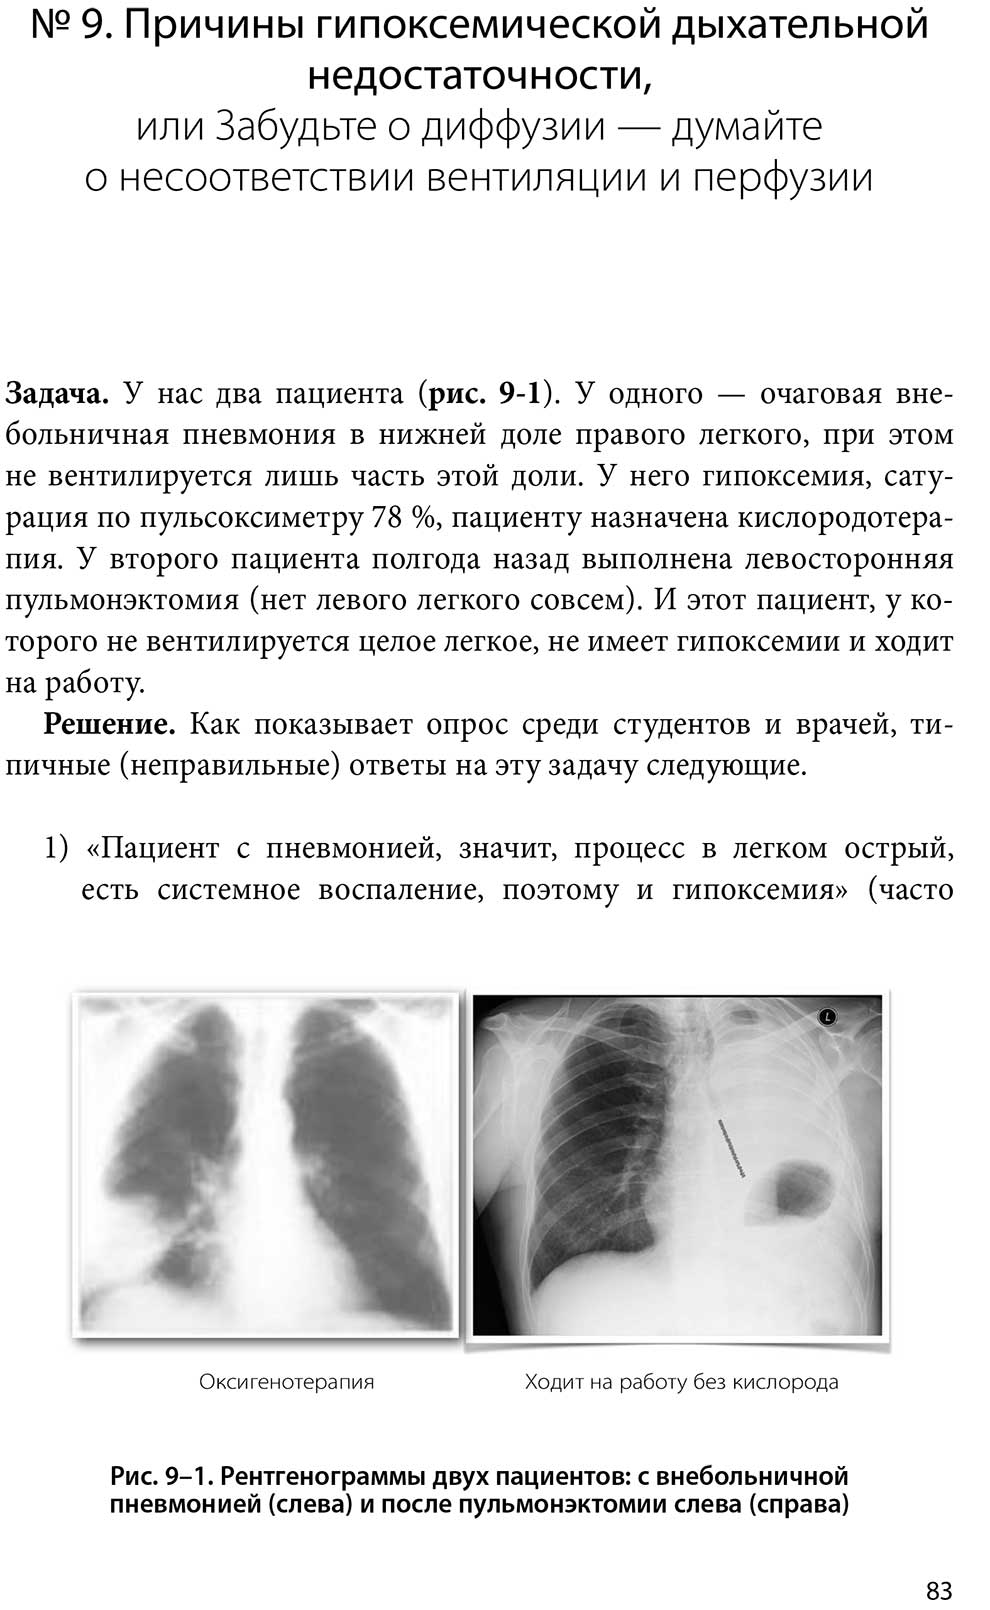 Рентгенограммы двух пациентов